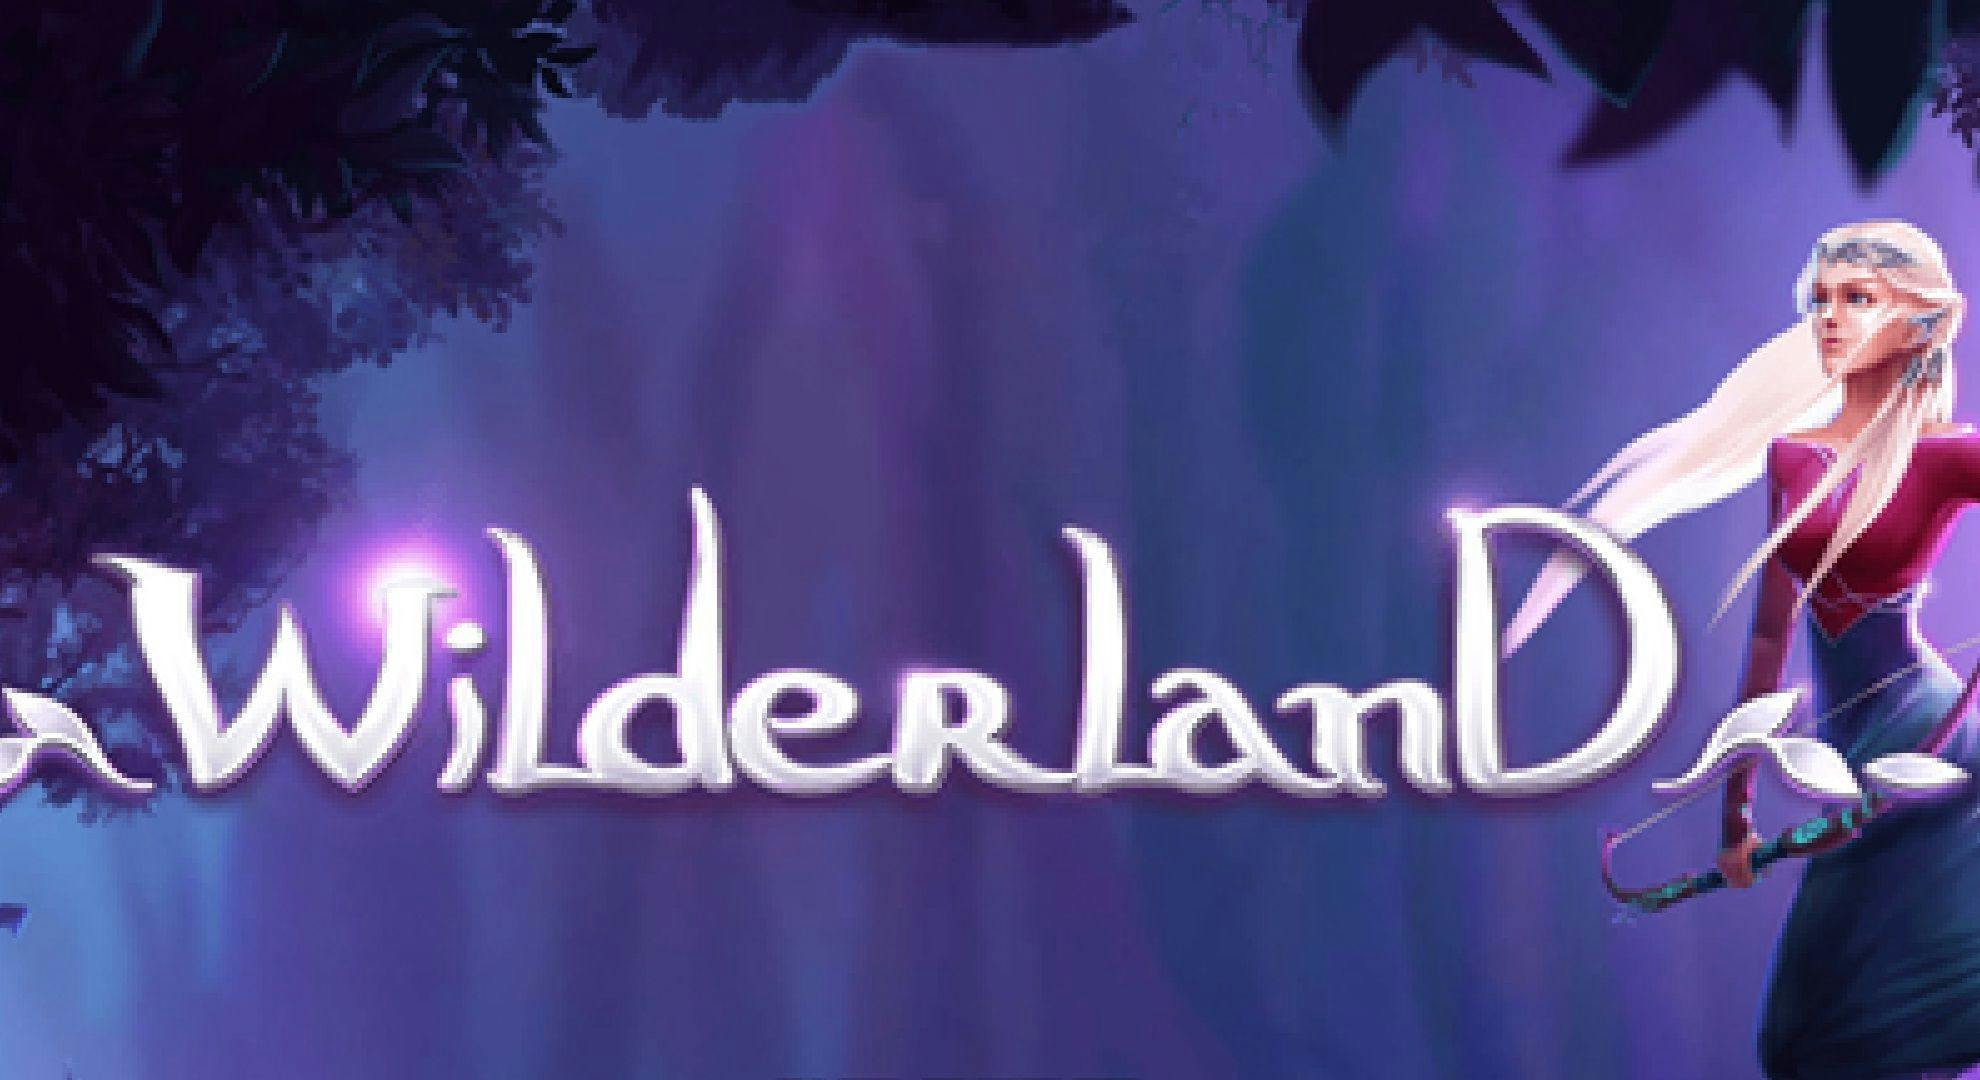 Wilderland Slot Online Free Play